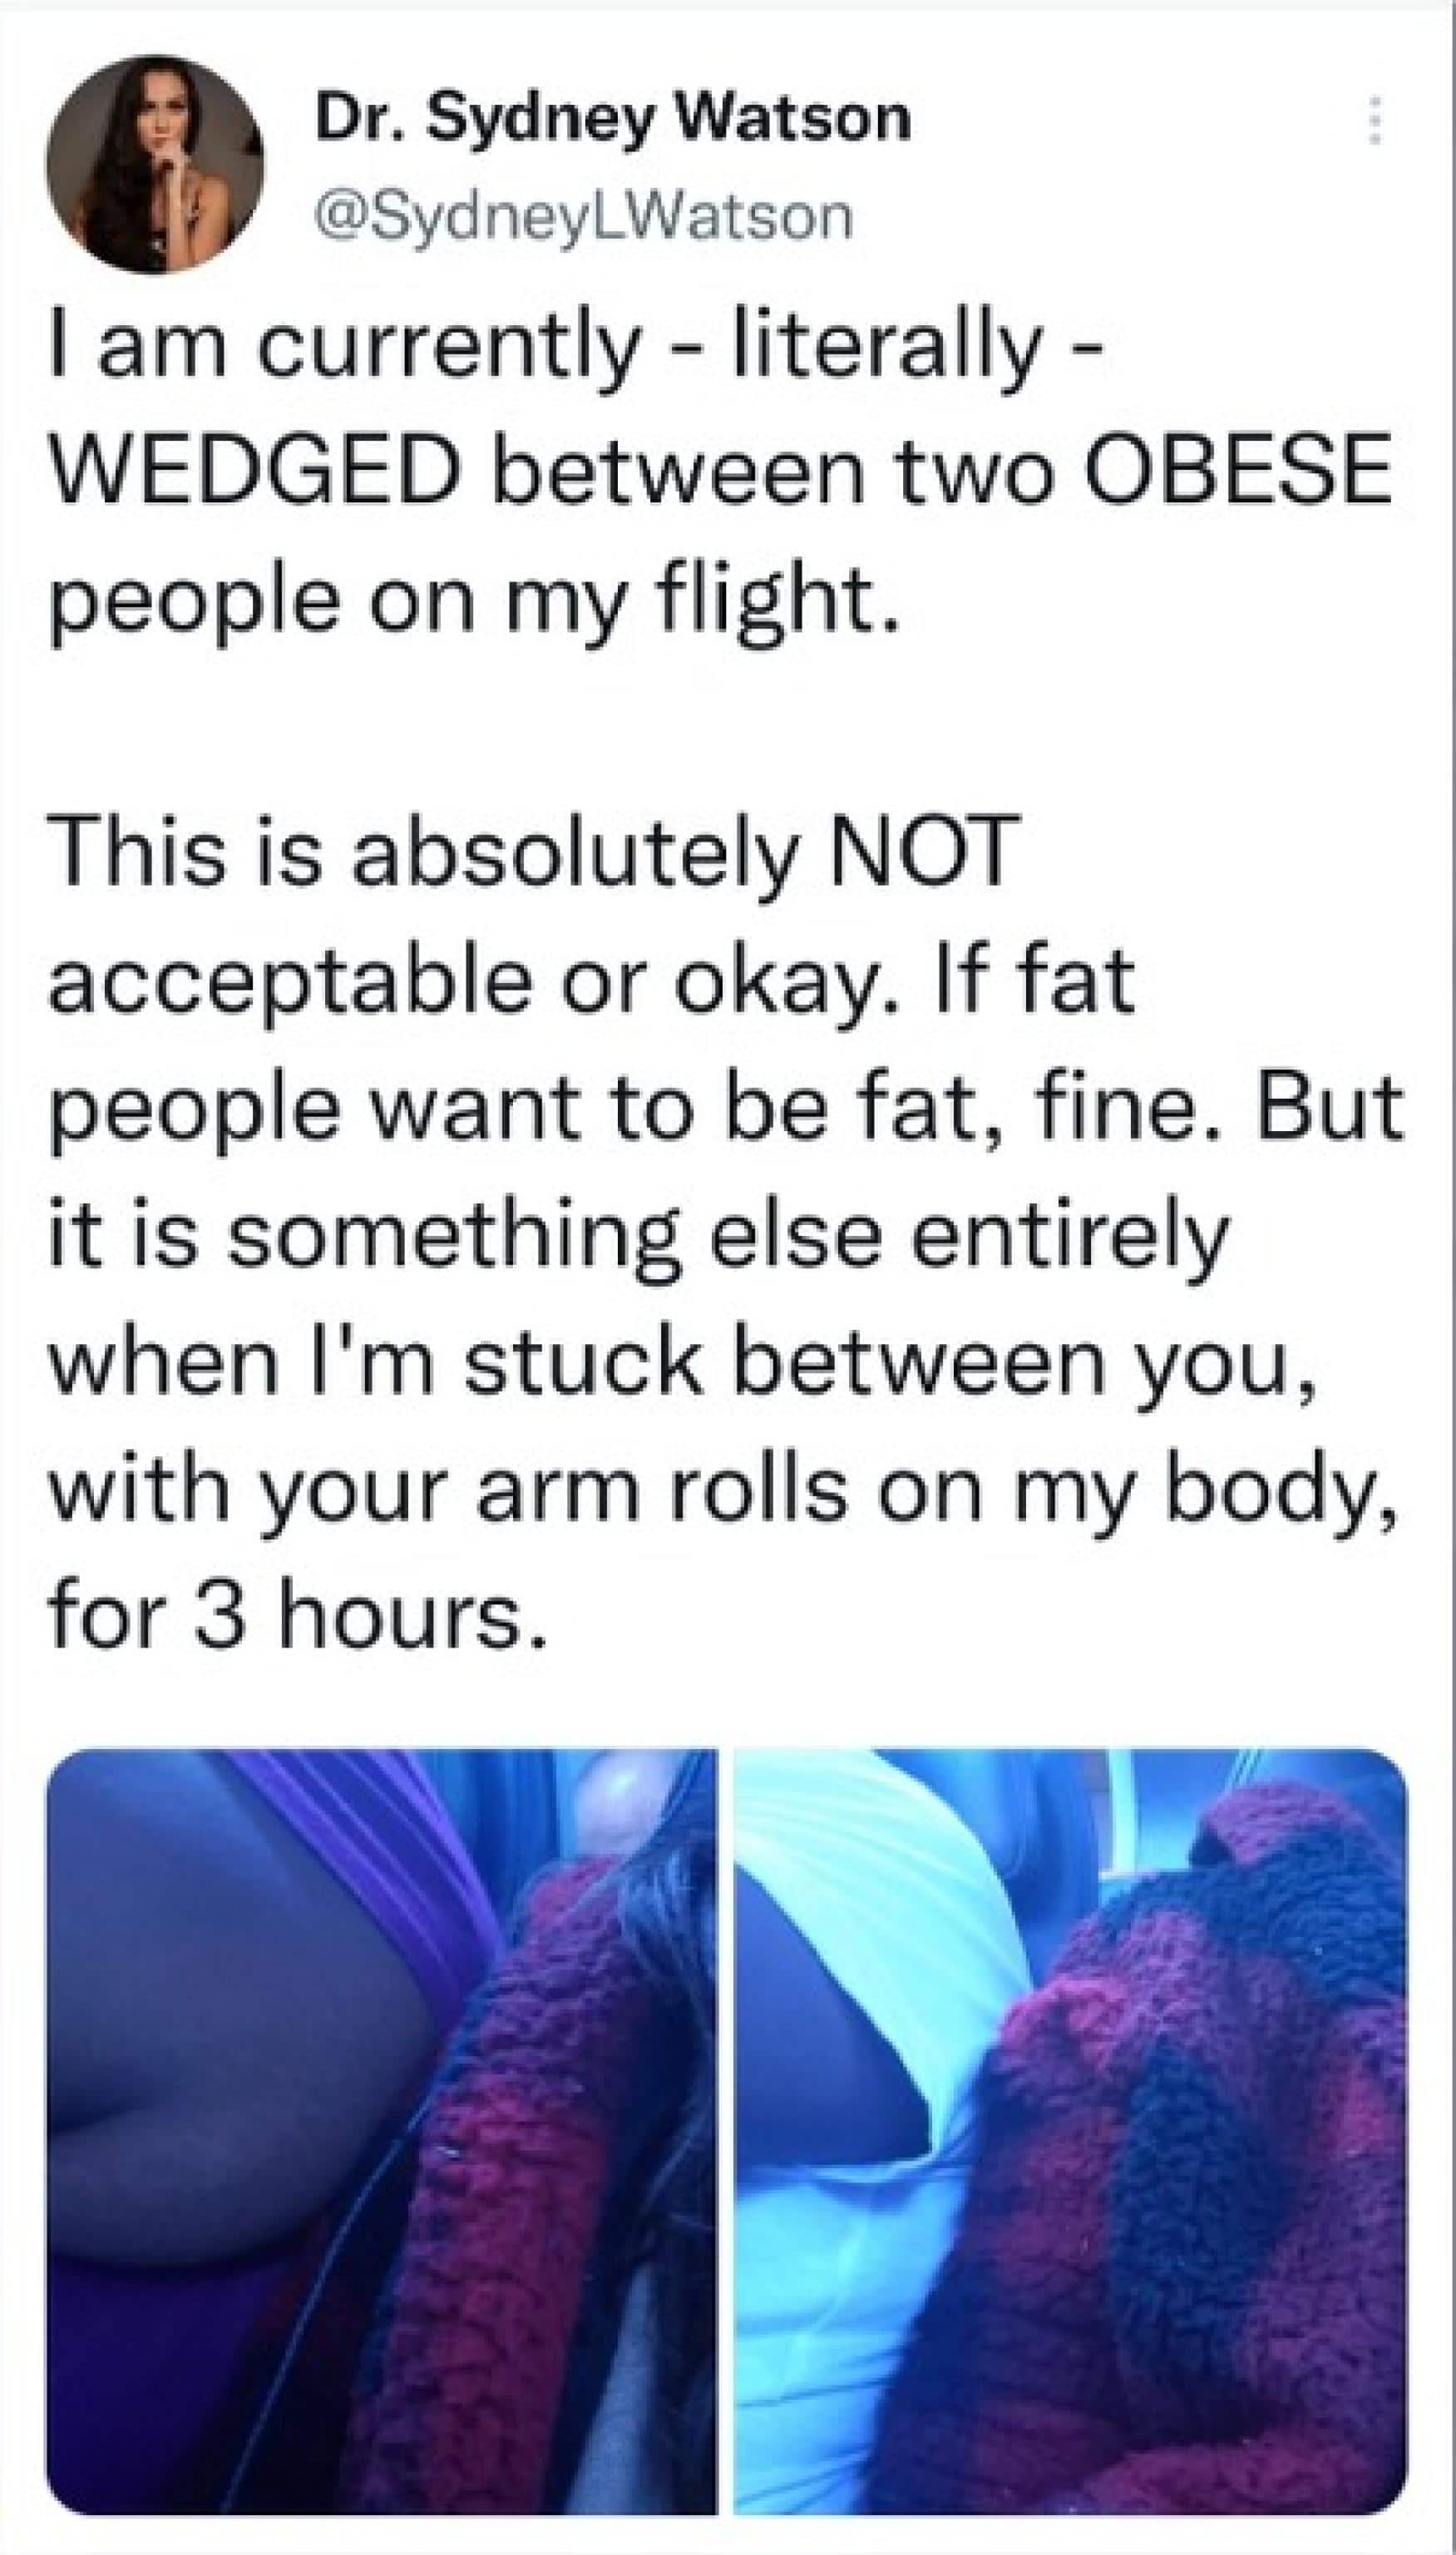 Il post su Twitter della youtuber australiana Sydney Watson che ha chiesto un risarcimento del biglietto del volo per essere rimasta ''incastrata per tutto il volo tra due persone obese", 18 ottobre 2022. TWTTER +++ ATTENZIONE LA FOTO NON PUO' ESSERE PUBBLICATA O RIPRODOTTA SENZA L'AUTORIZZAZIONE DELLA FONTE DI ORIGINE CUI SI RINVIA+++